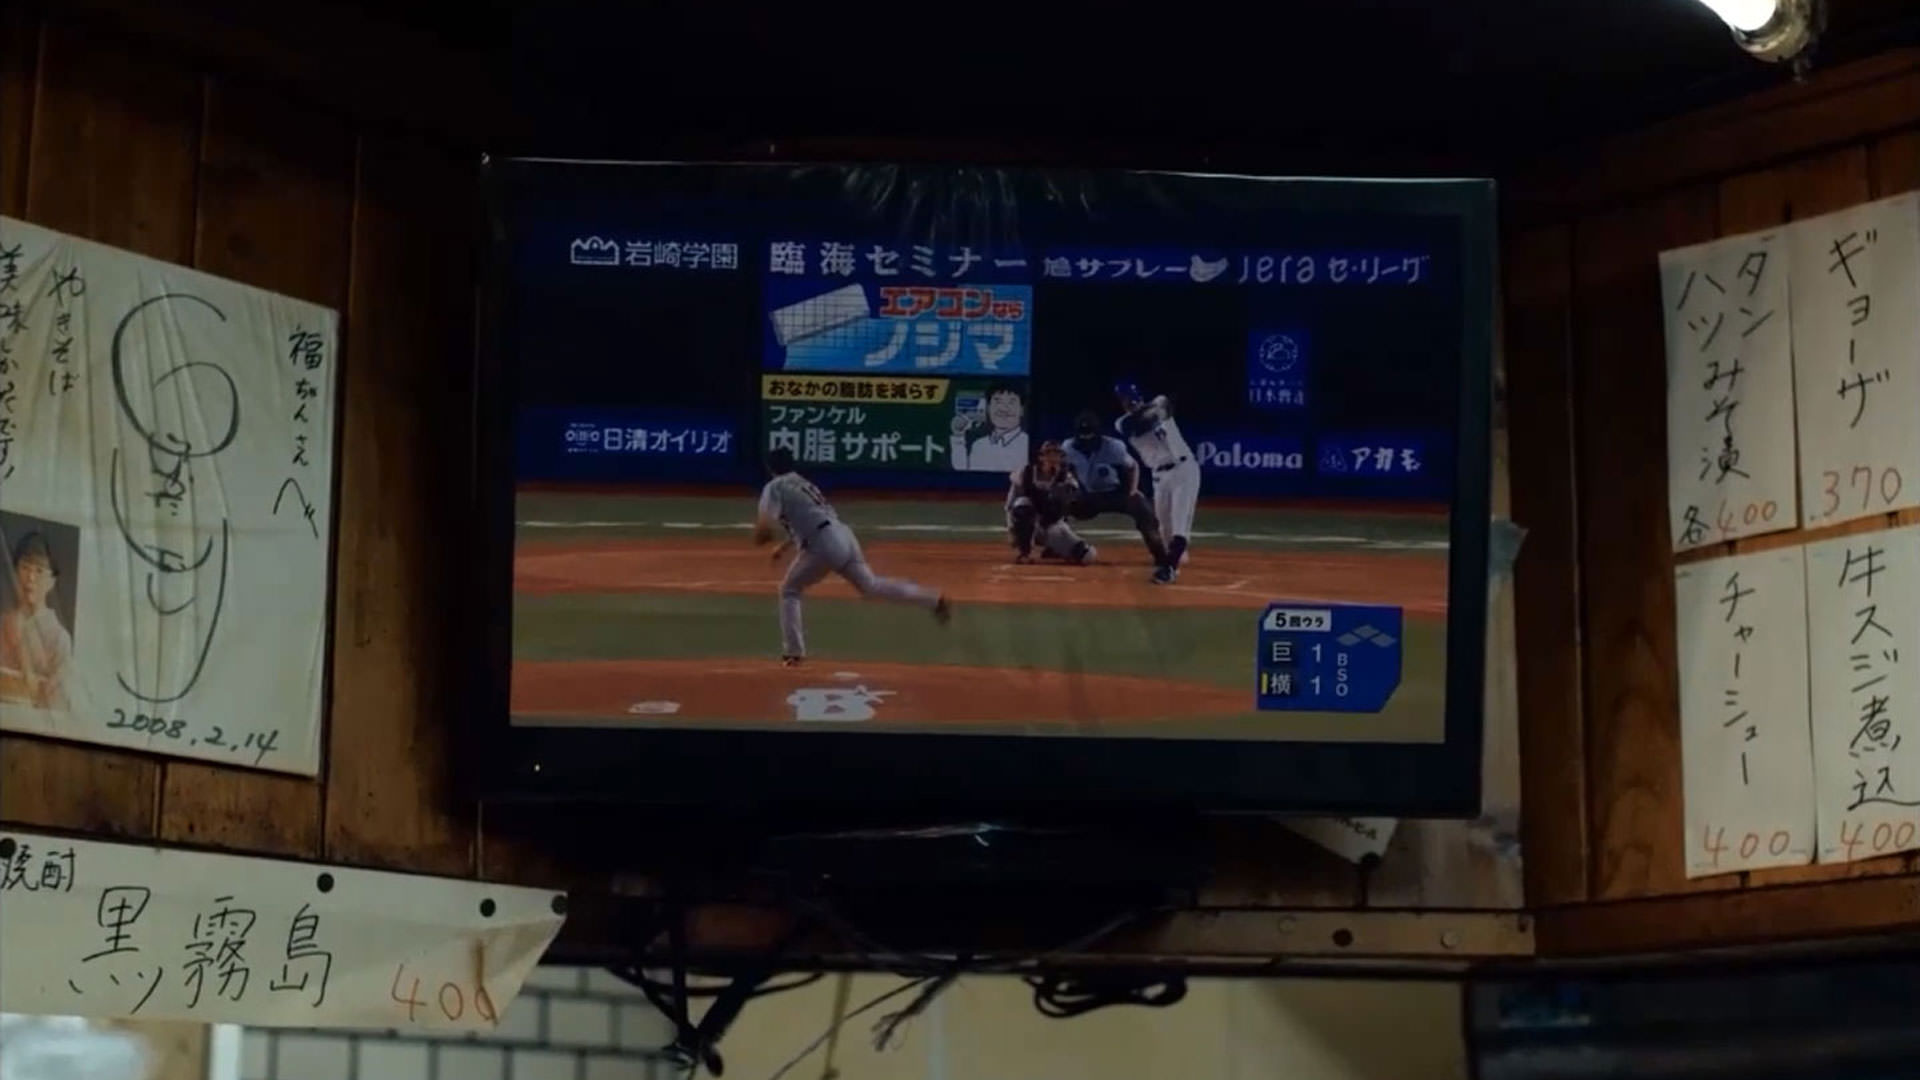 پخش زنده‌ی یک مسابقه‌ی بیسبال داخل یک تلویزیون نصب شده بر دیوار در نمایی از فیلم روزهای عالی به کارگردانی ویم وندرس